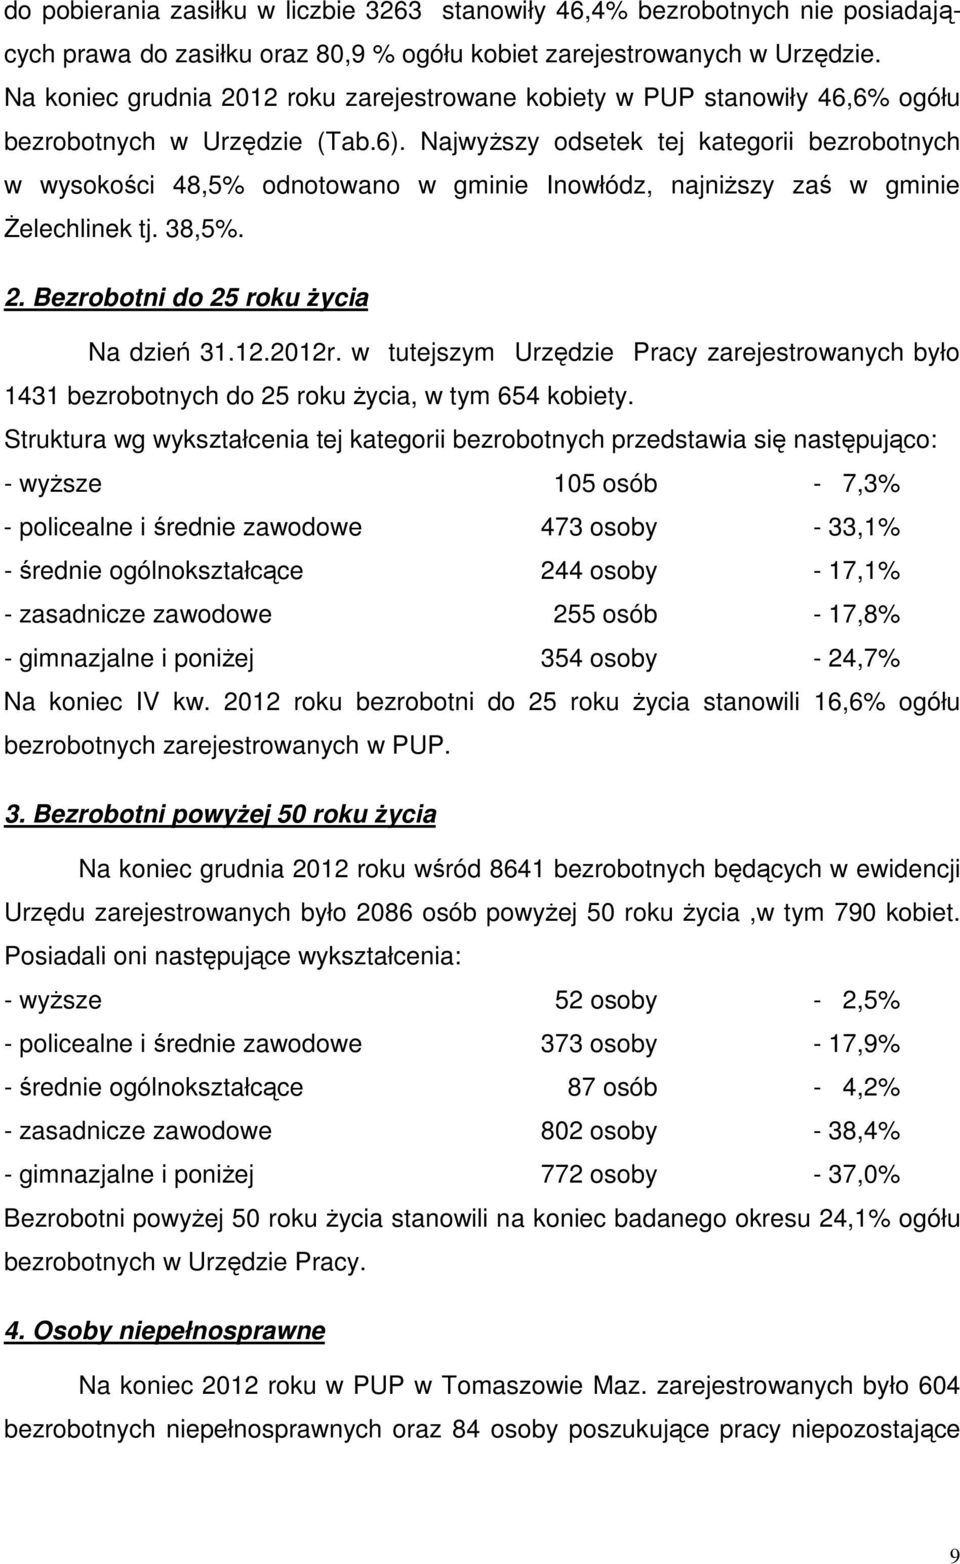 Najwyższy odsetek tej kategorii bezrobotnych w wysokości 48,5% odnotowano w gminie Inowłódz, najniższy zaś w gminie Żelechlinek tj. 38,5%. 2. Bezrobotni do 25 roku życia Na dzień 31.12.2012r.